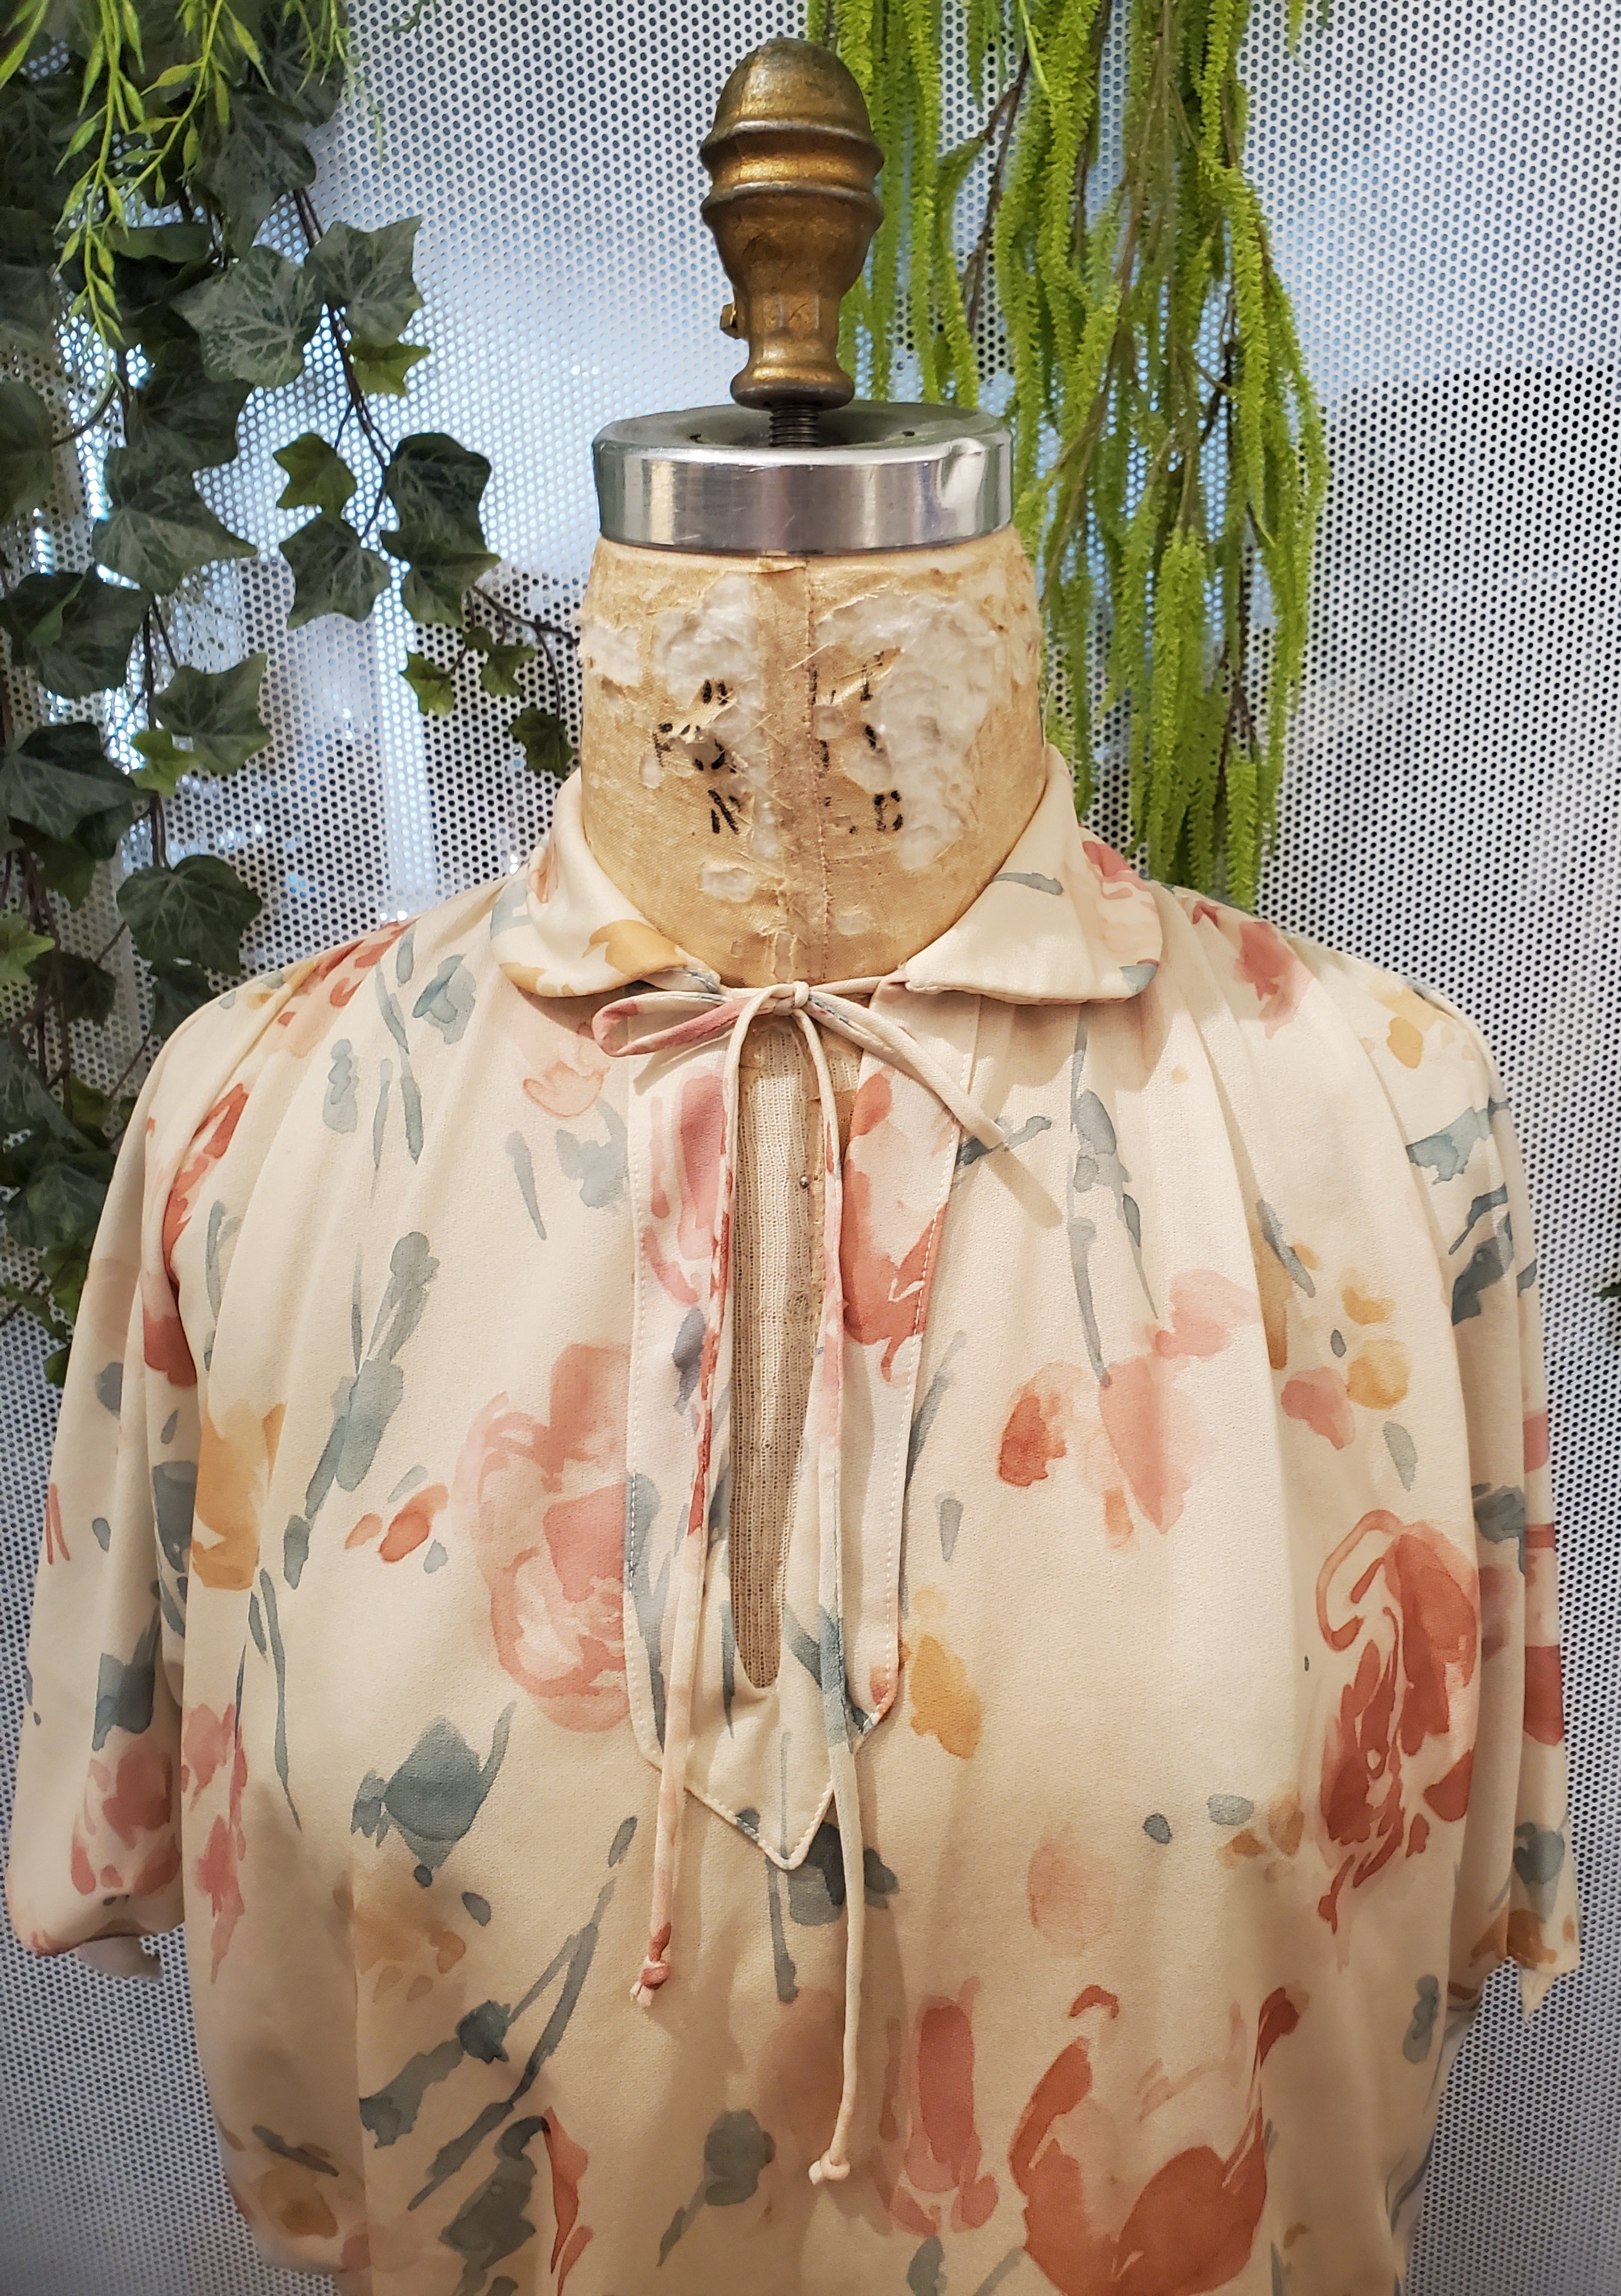 1970’s Floral Dress